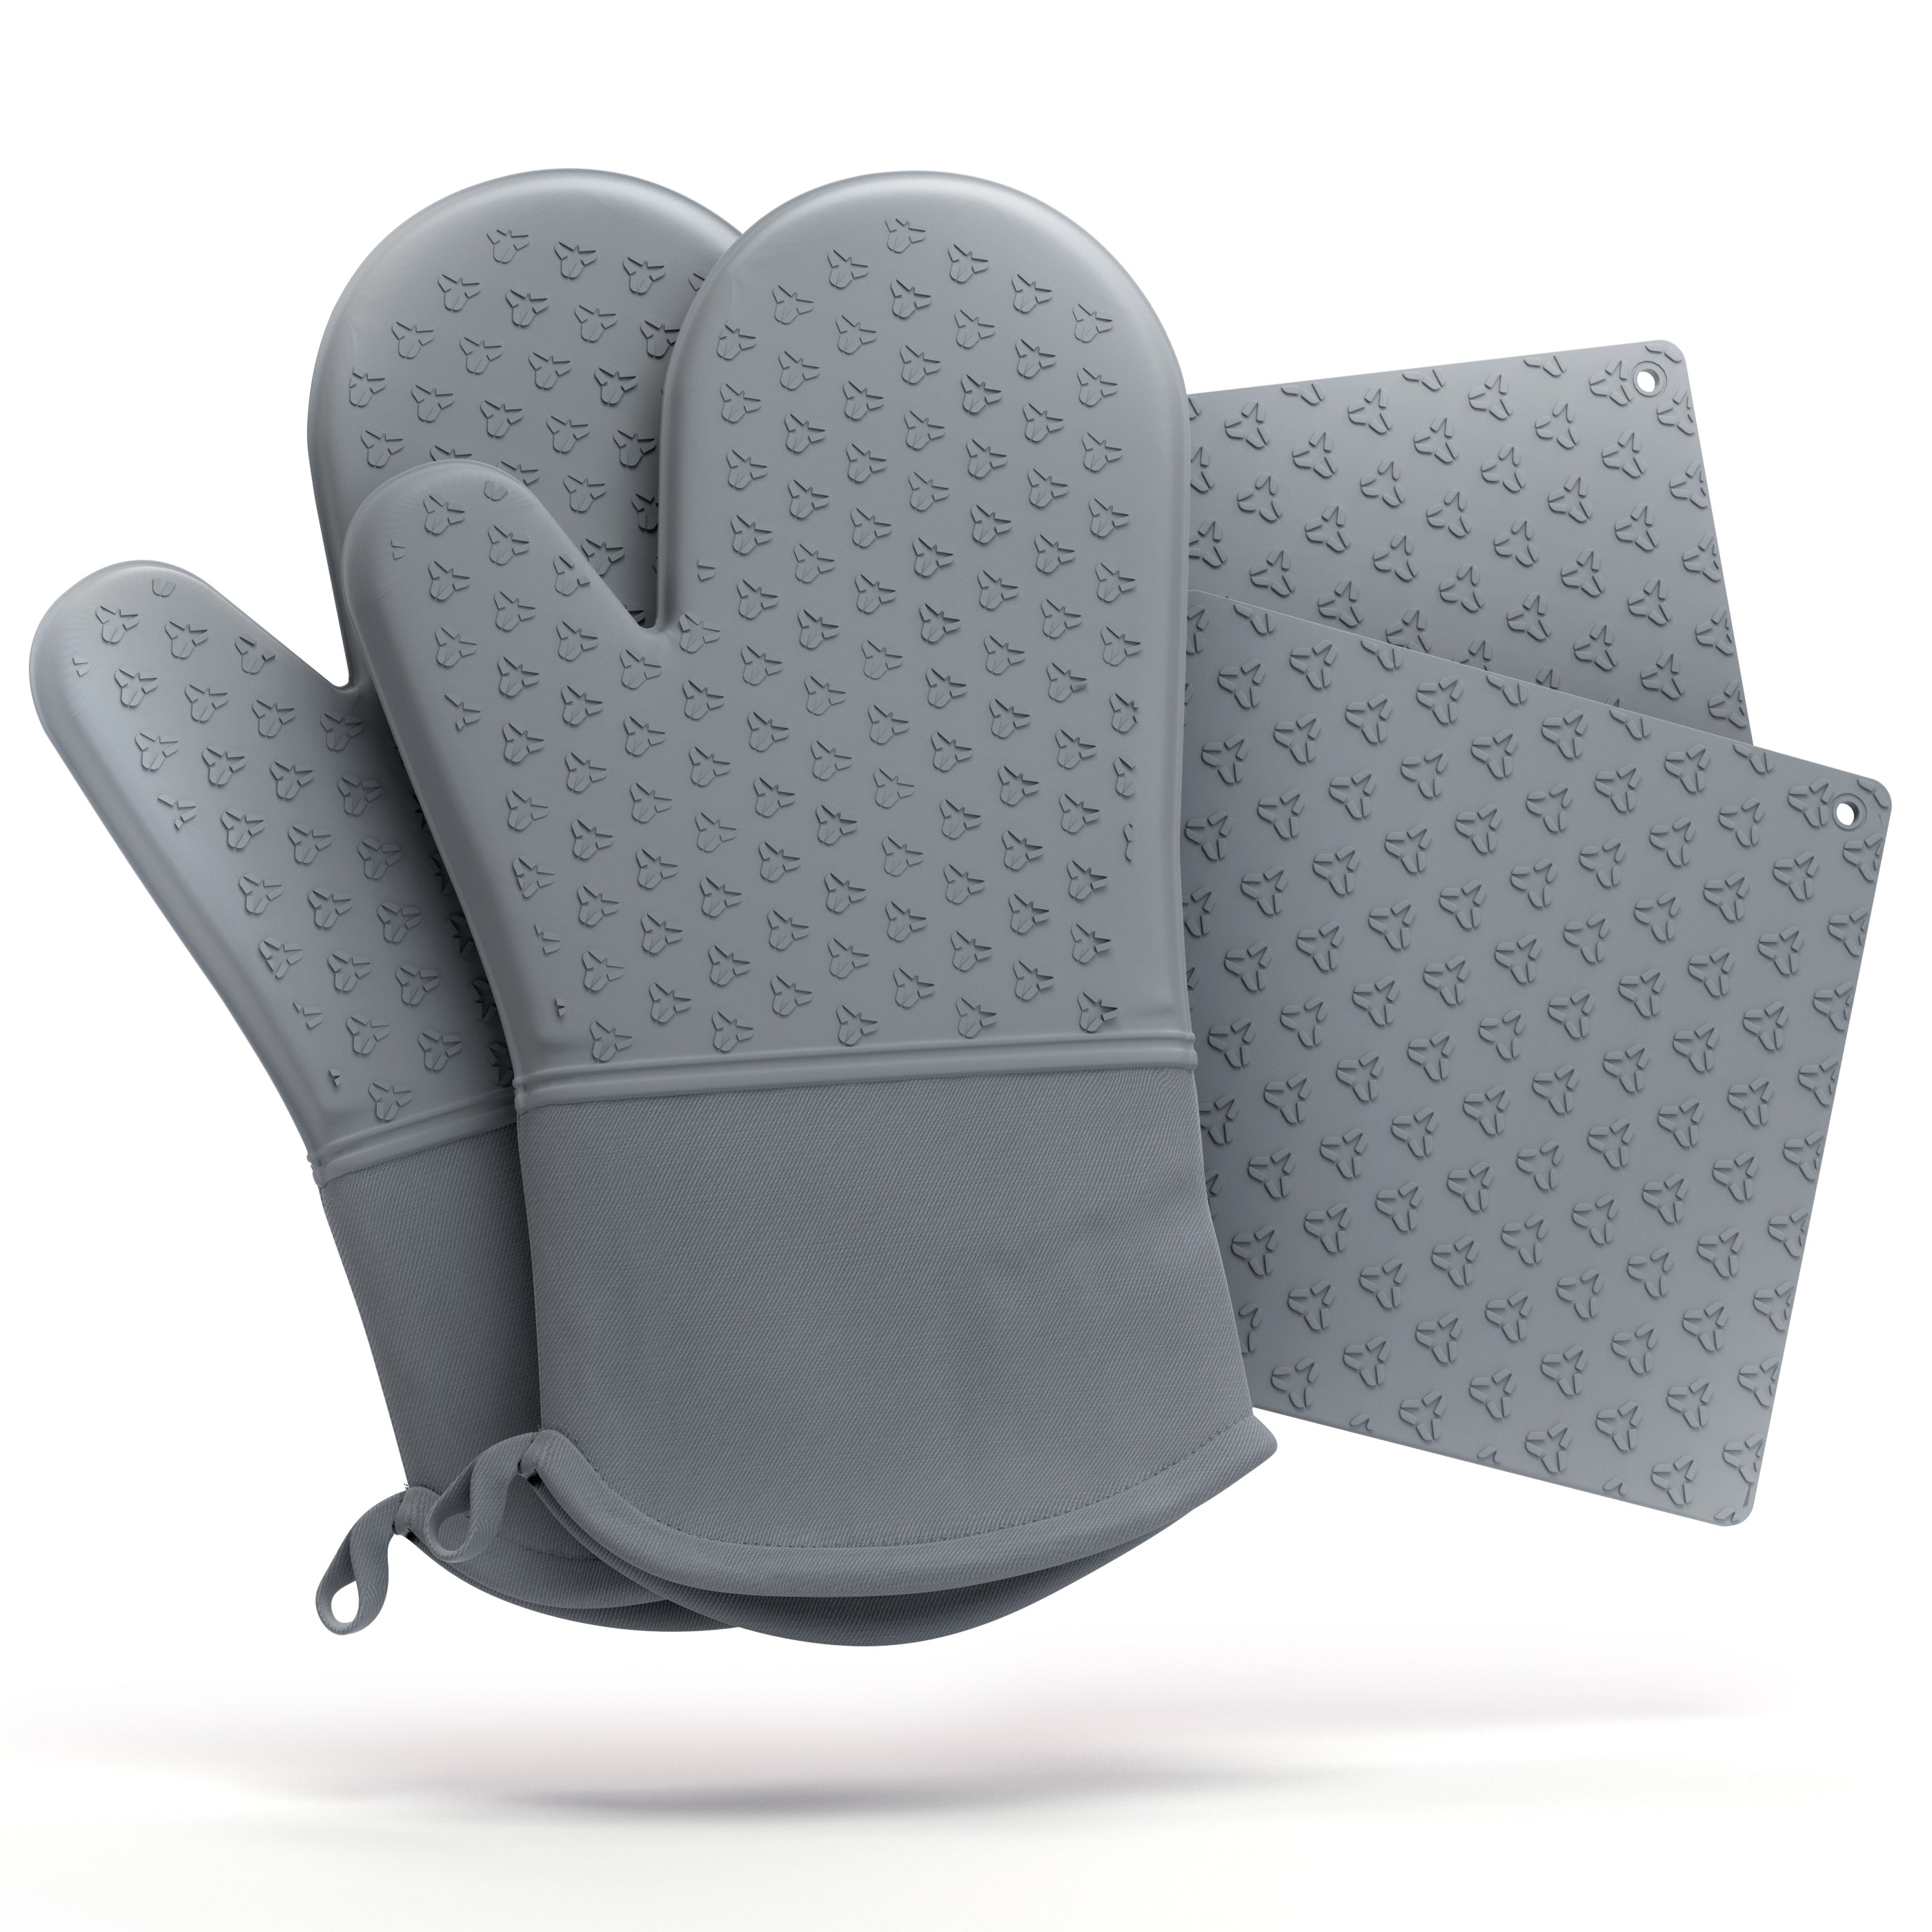 Oven Mitt & Pot Holder Set – Muslin Comfort